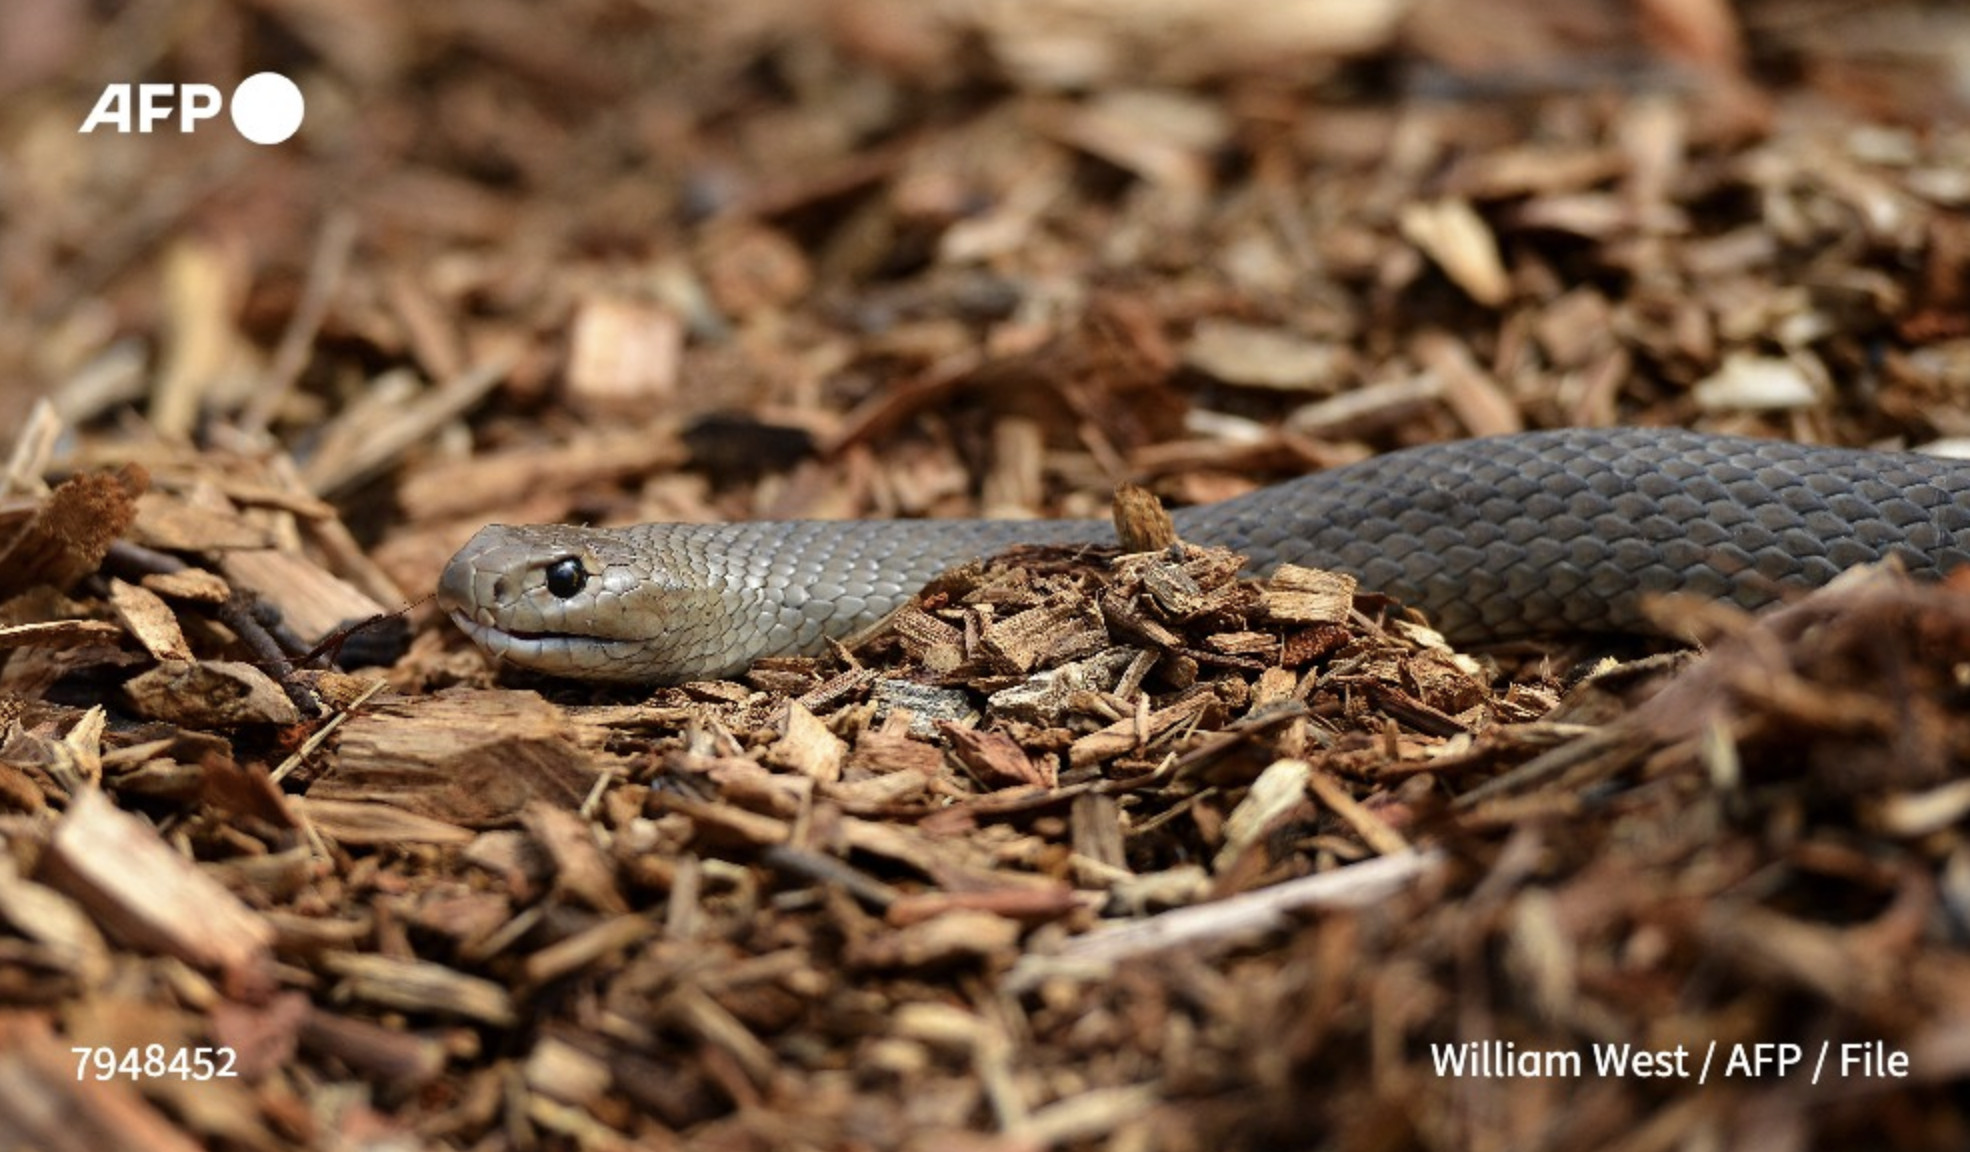 Poisonous snake stops play at Australia tennis tournament